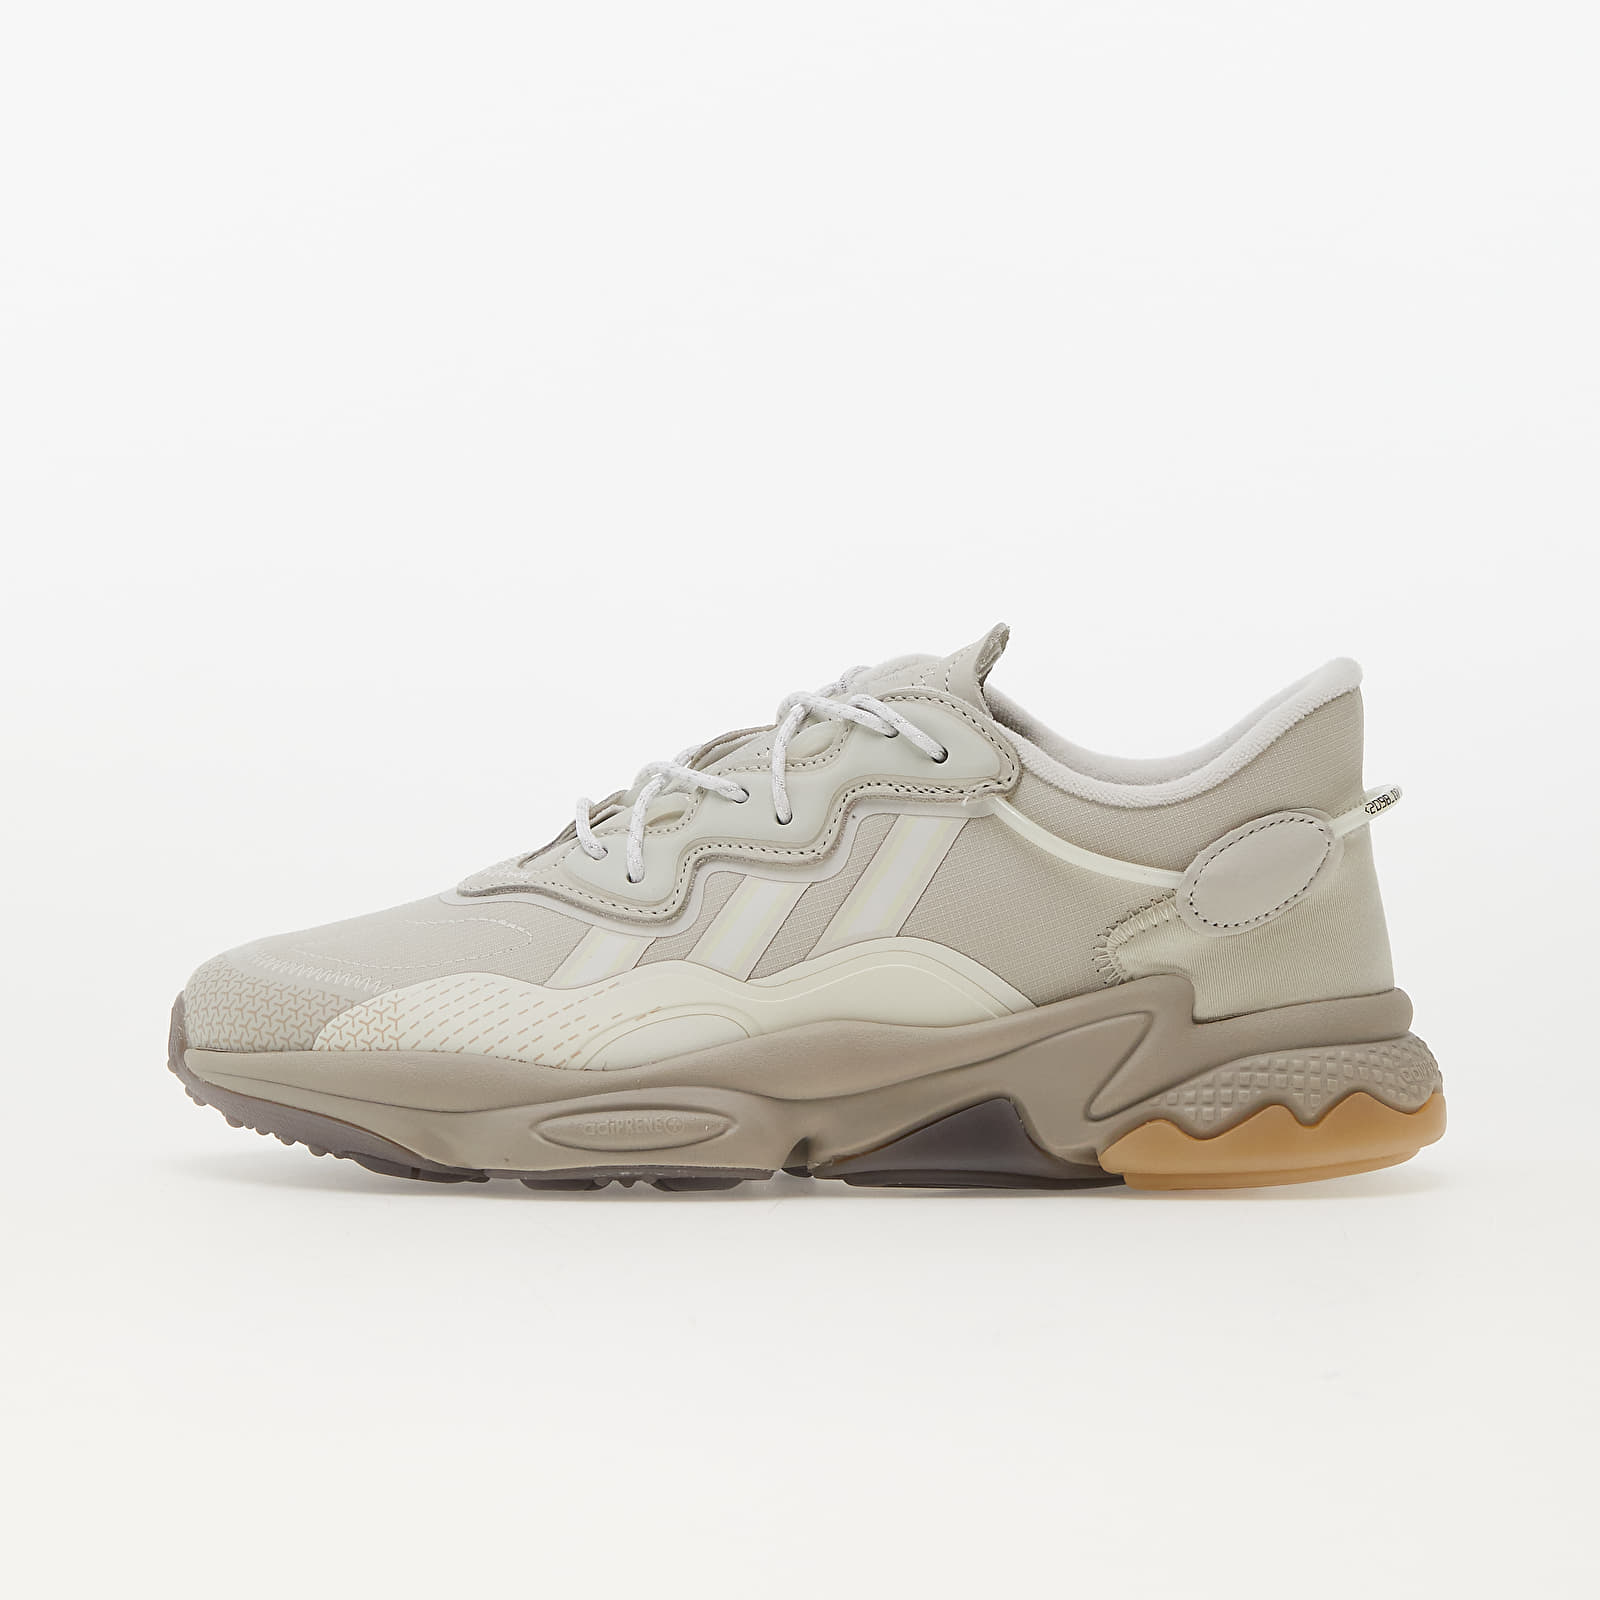 Men's shoes adidas Ozweego Aluminium/ Ftw White/ Off White